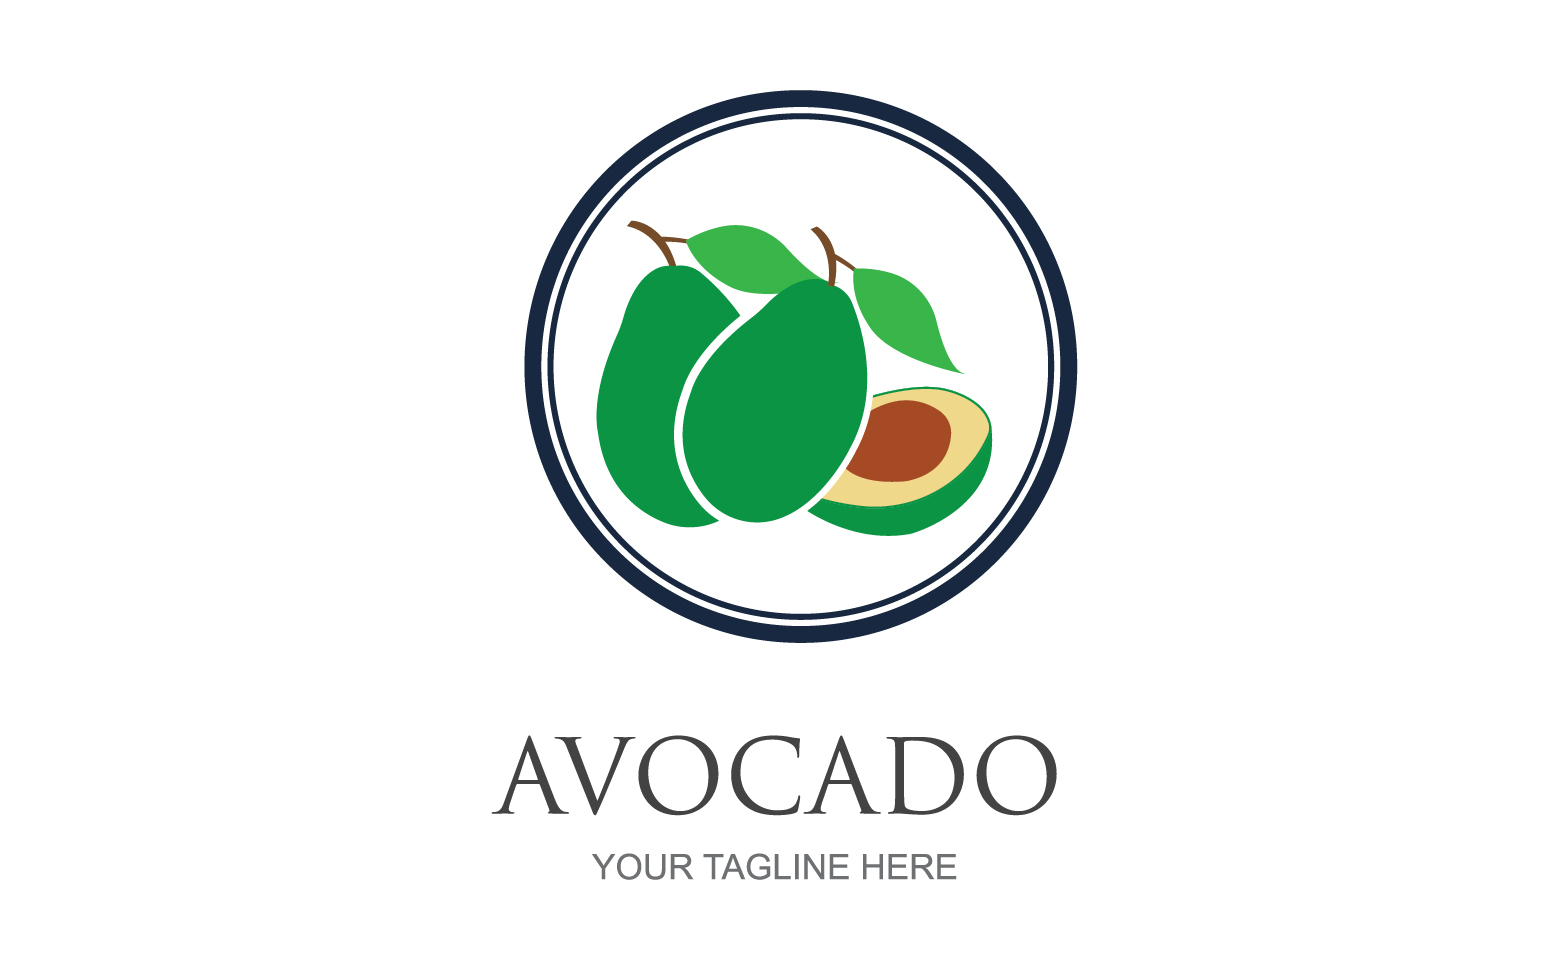 Avocado fruits icon vector logo design v9